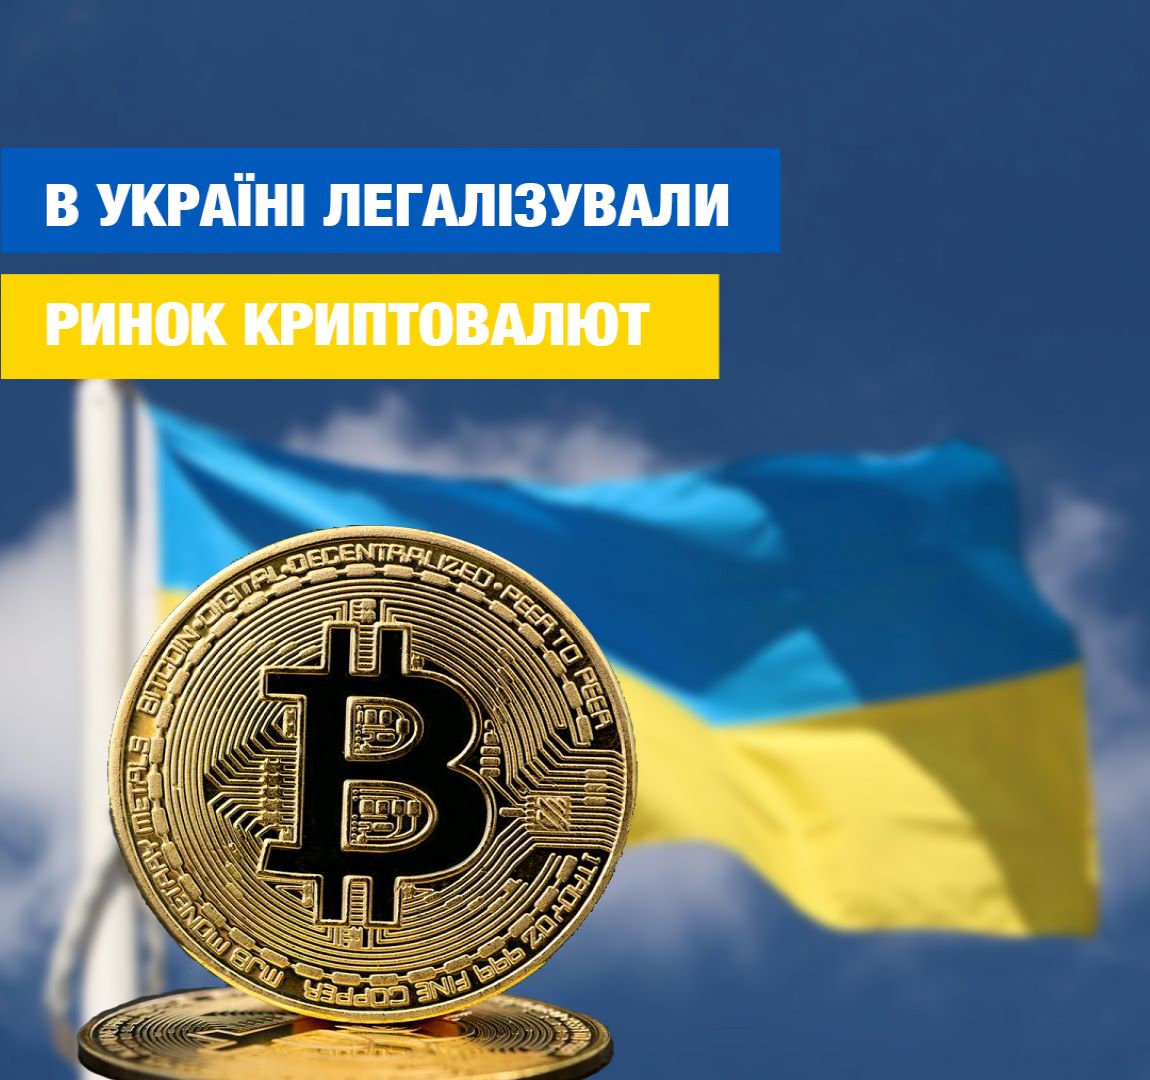 В Украине легализовали рынок криптовалют: как с ними работать? - фото 1